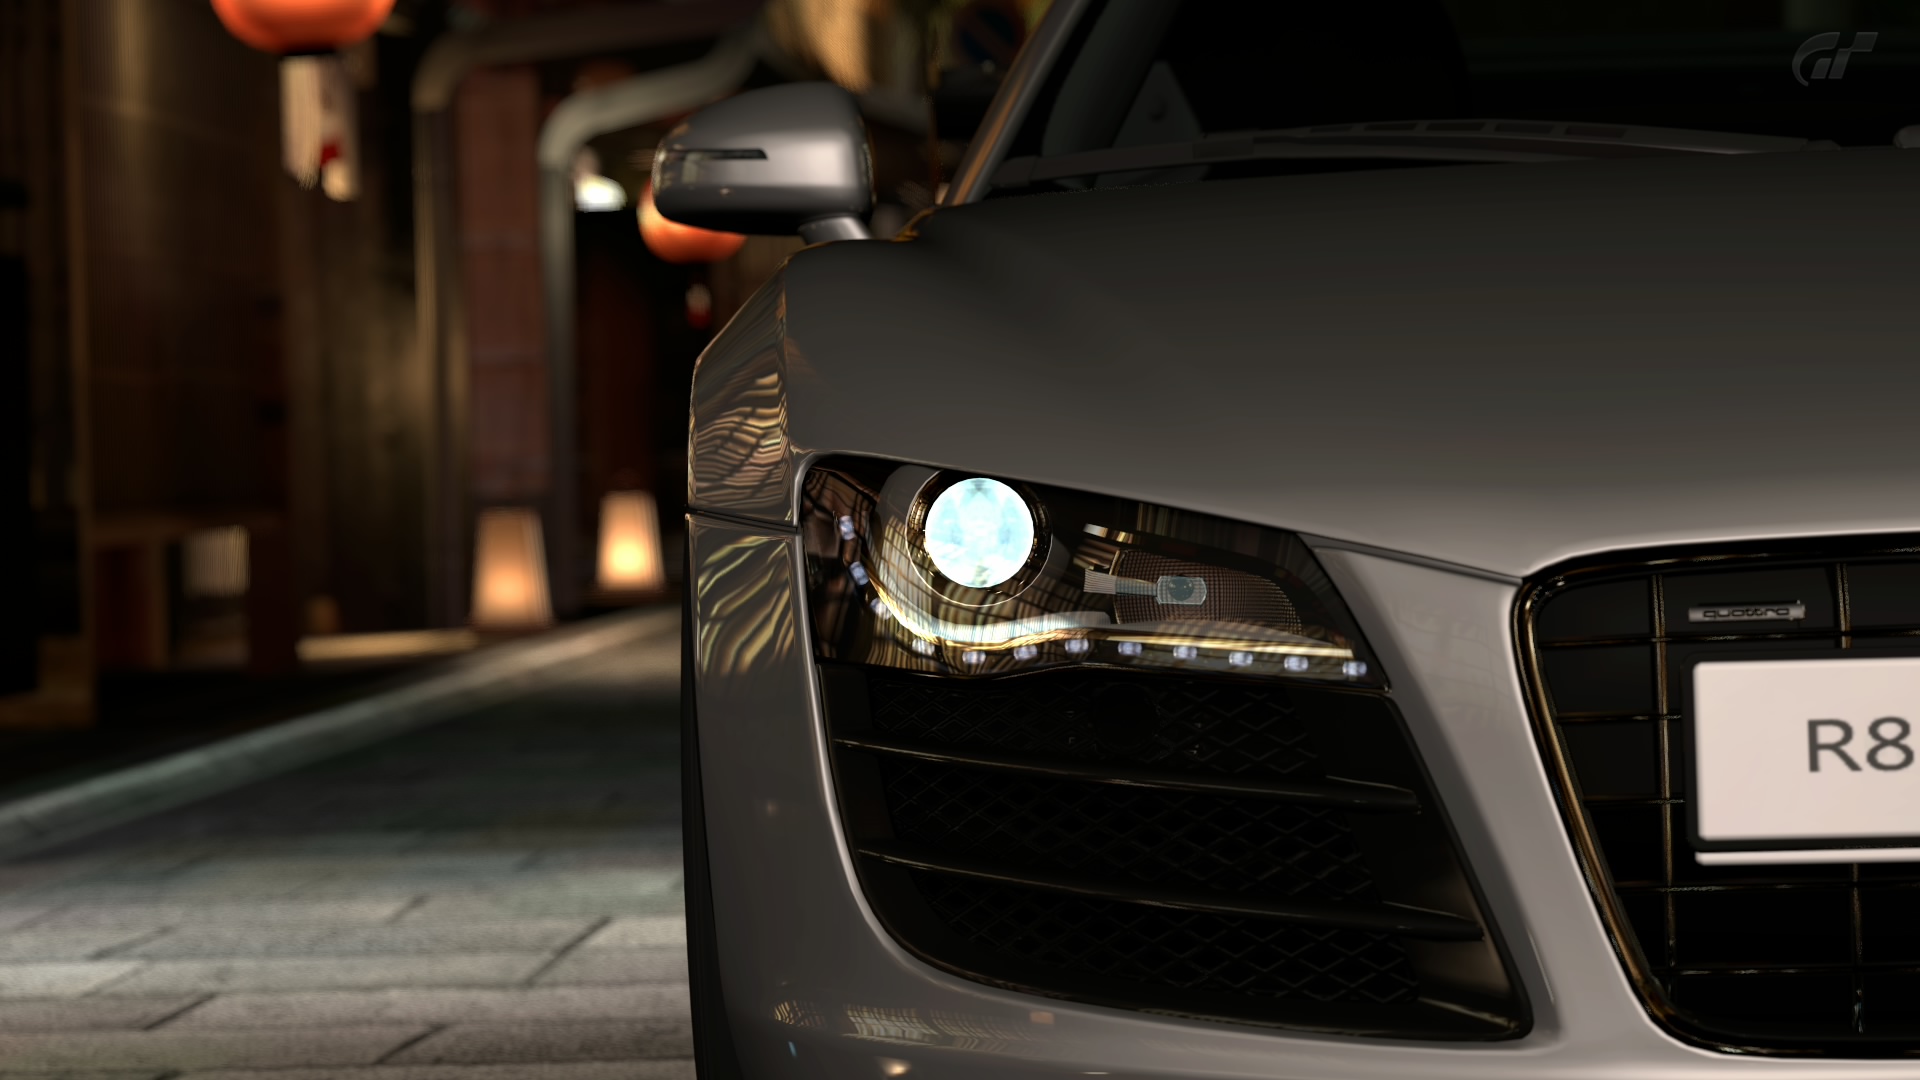 video games, cars, Audi, Audi R8, Gran Turismo 5 - desktop wallpaper